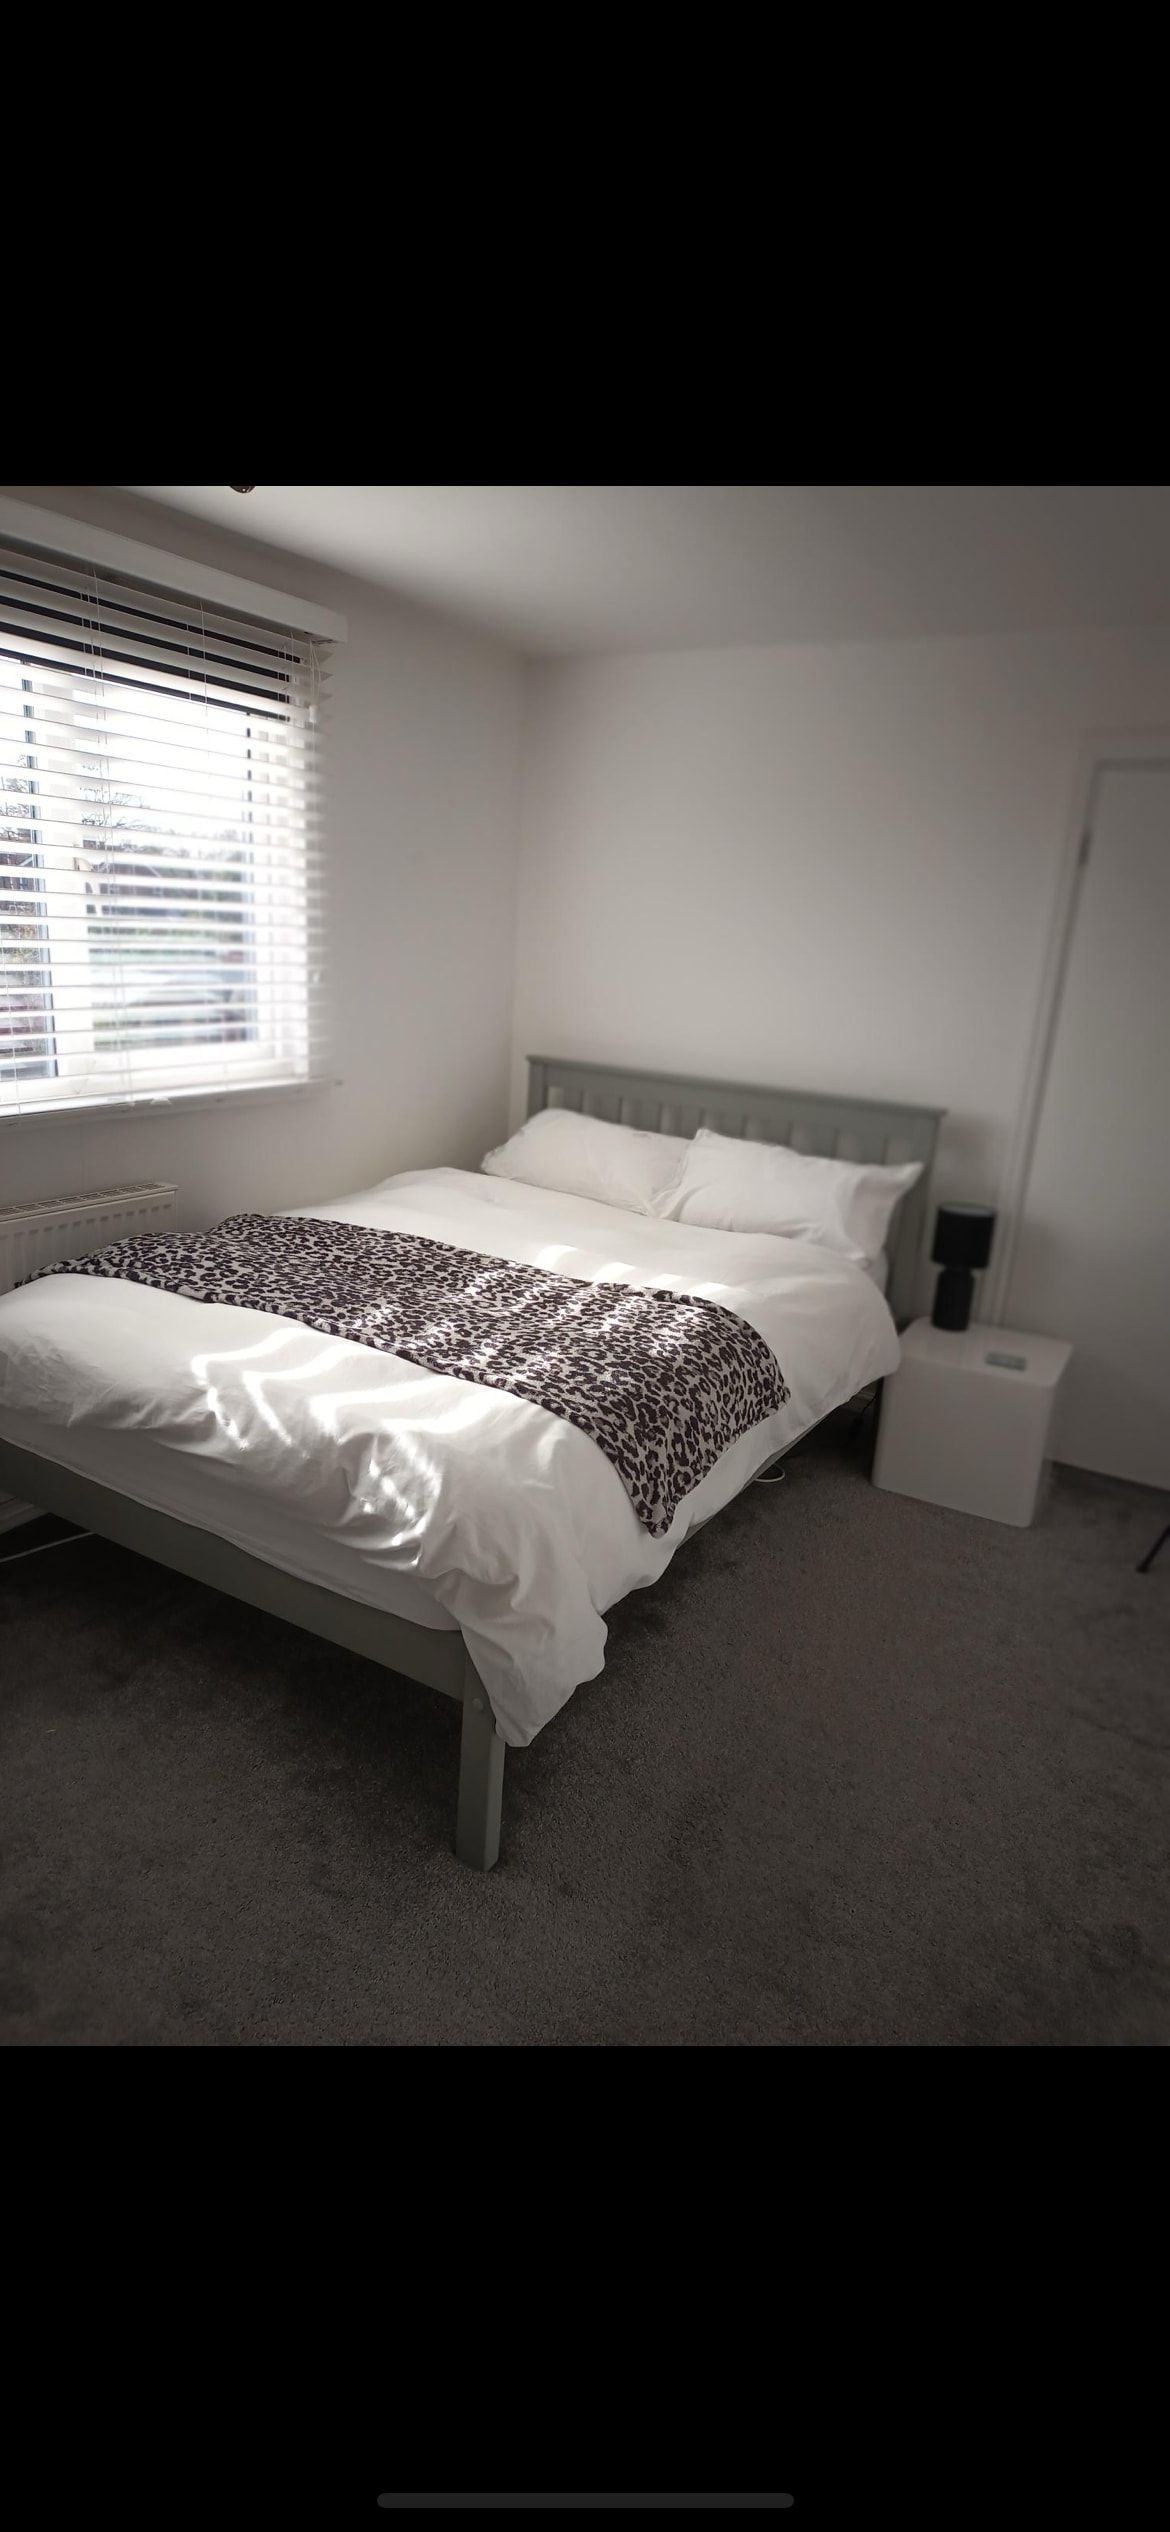 房间安静，位于Emsworth ，配备独立卫生间。